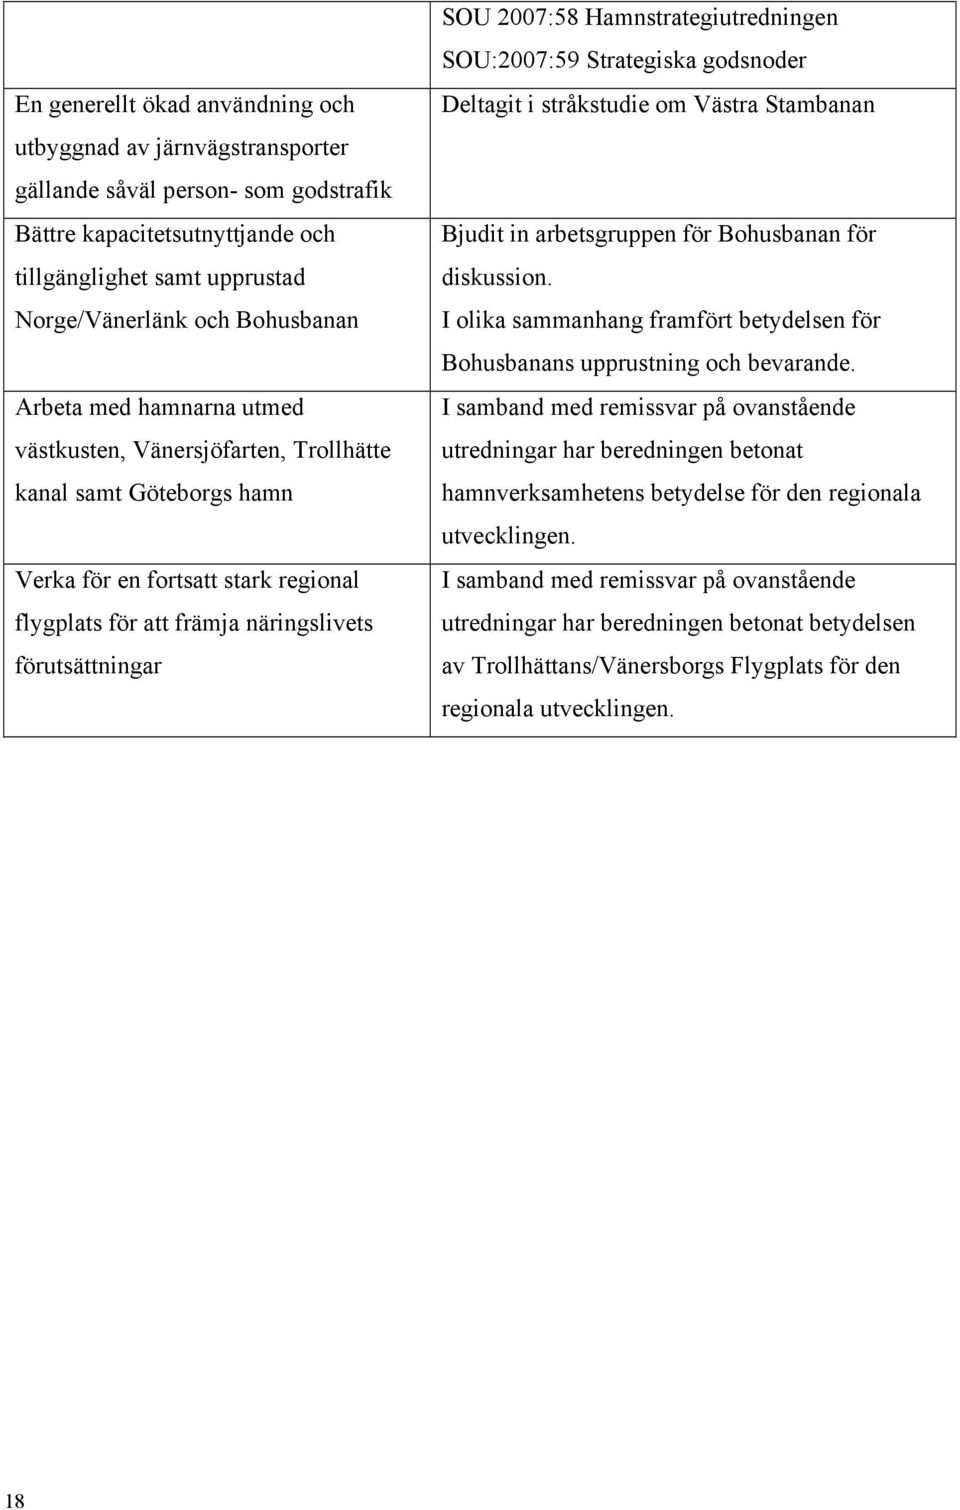 Hamnstrategiutredningen SOU:2007:59 Strategiska godsnoder Deltagit i stråkstudie om Västra Stambanan Bjudit in arbetsgruppen för Bohusbanan för diskussion.